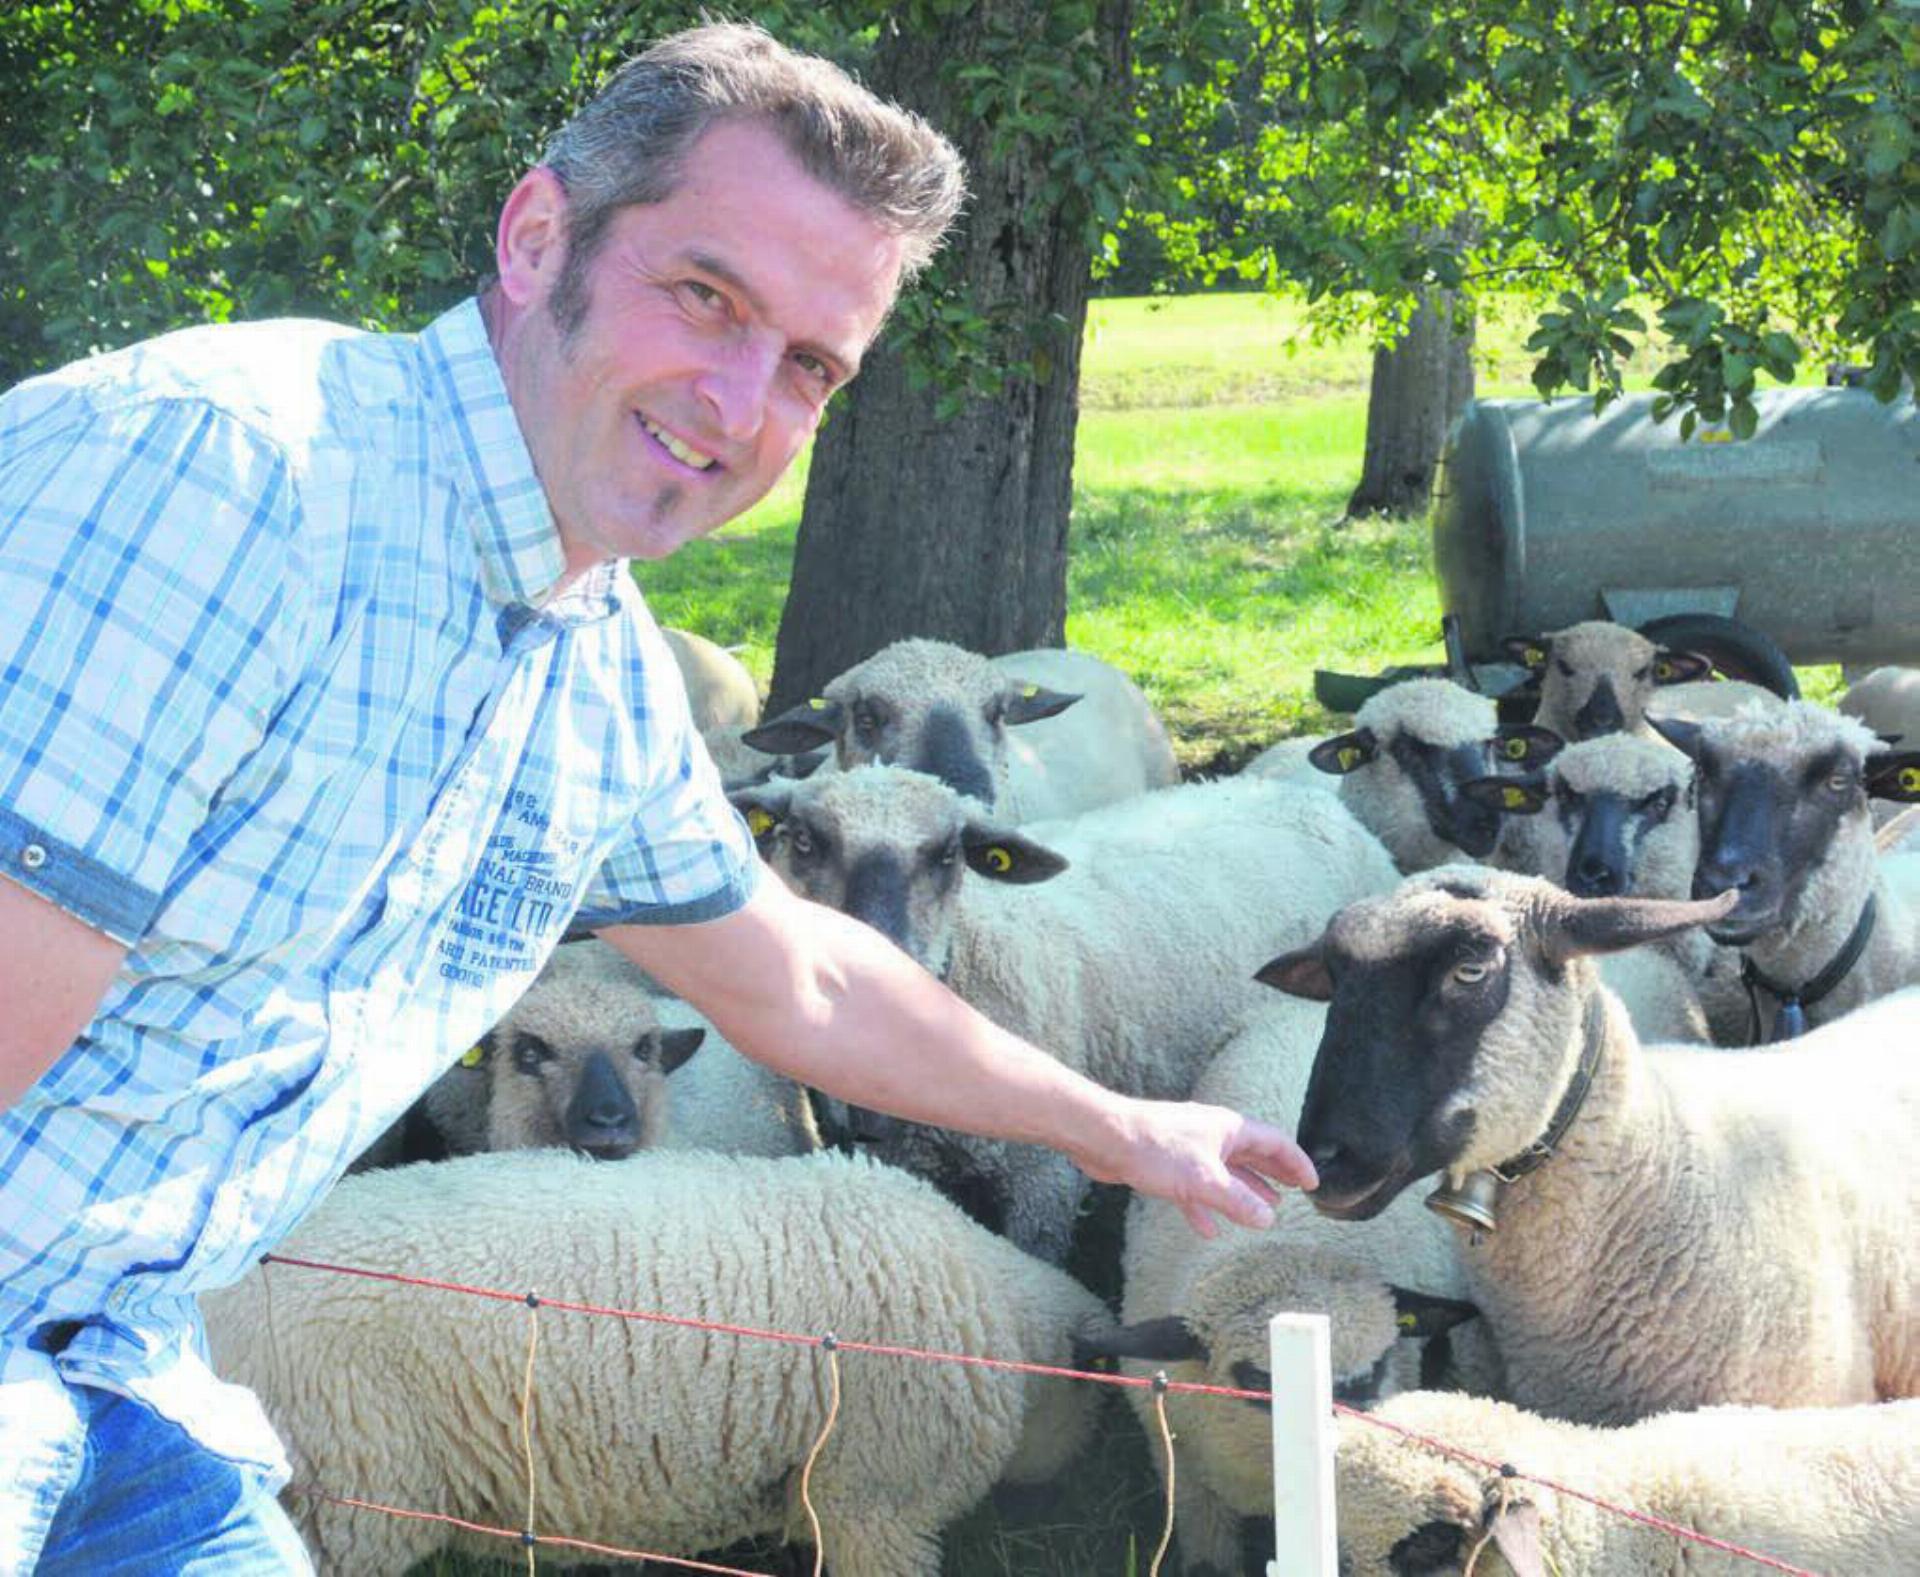 Gemeinderat Roland Belser ist stellvertretender Werkhofleiter in Bergdietikon und Landwirt. Er hält unter anderem Schafe. «Das entspannt mich», erklärt er. Bild: Roger Wetli